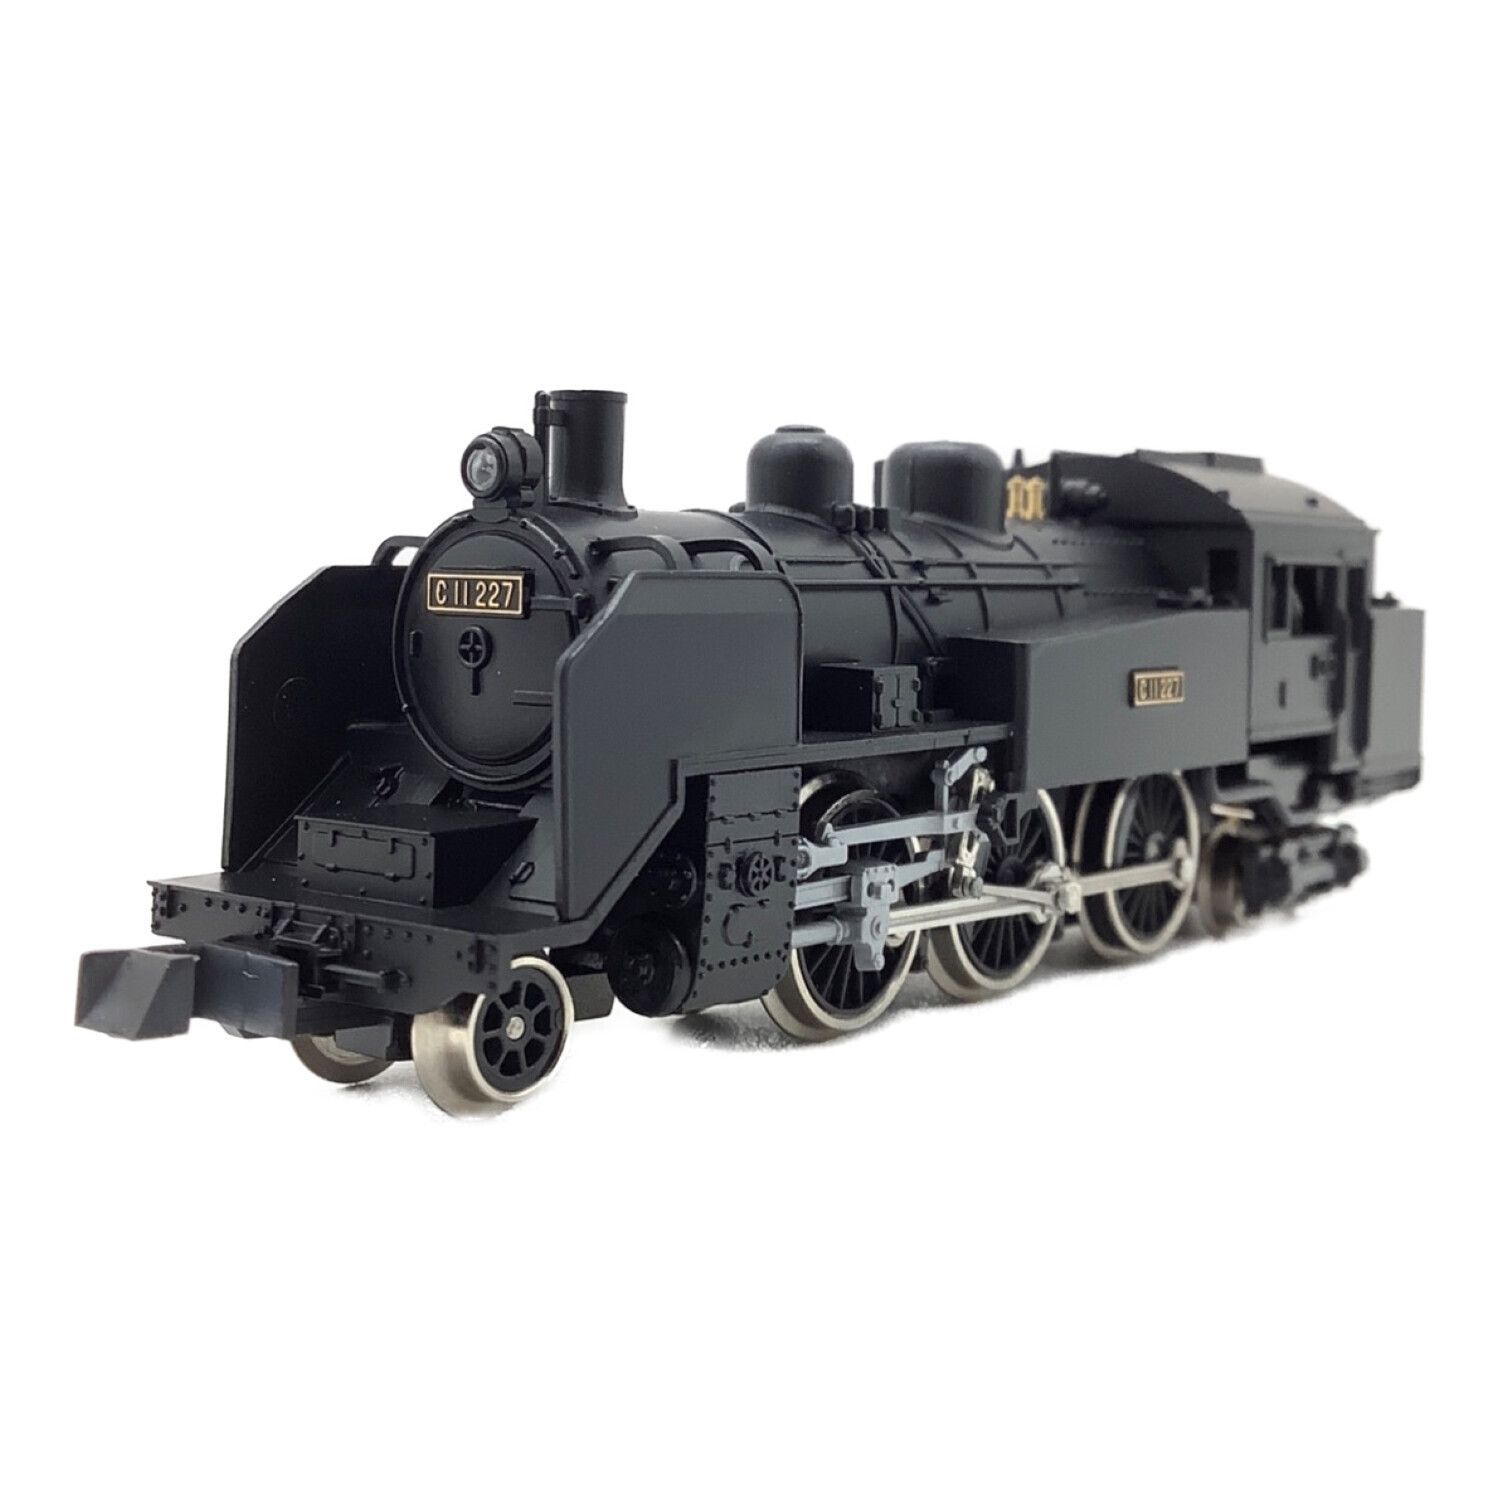 上品】 蒸気機関車 C11 Nゲージ 2002 KATO 鉄道模型 - powertee.com